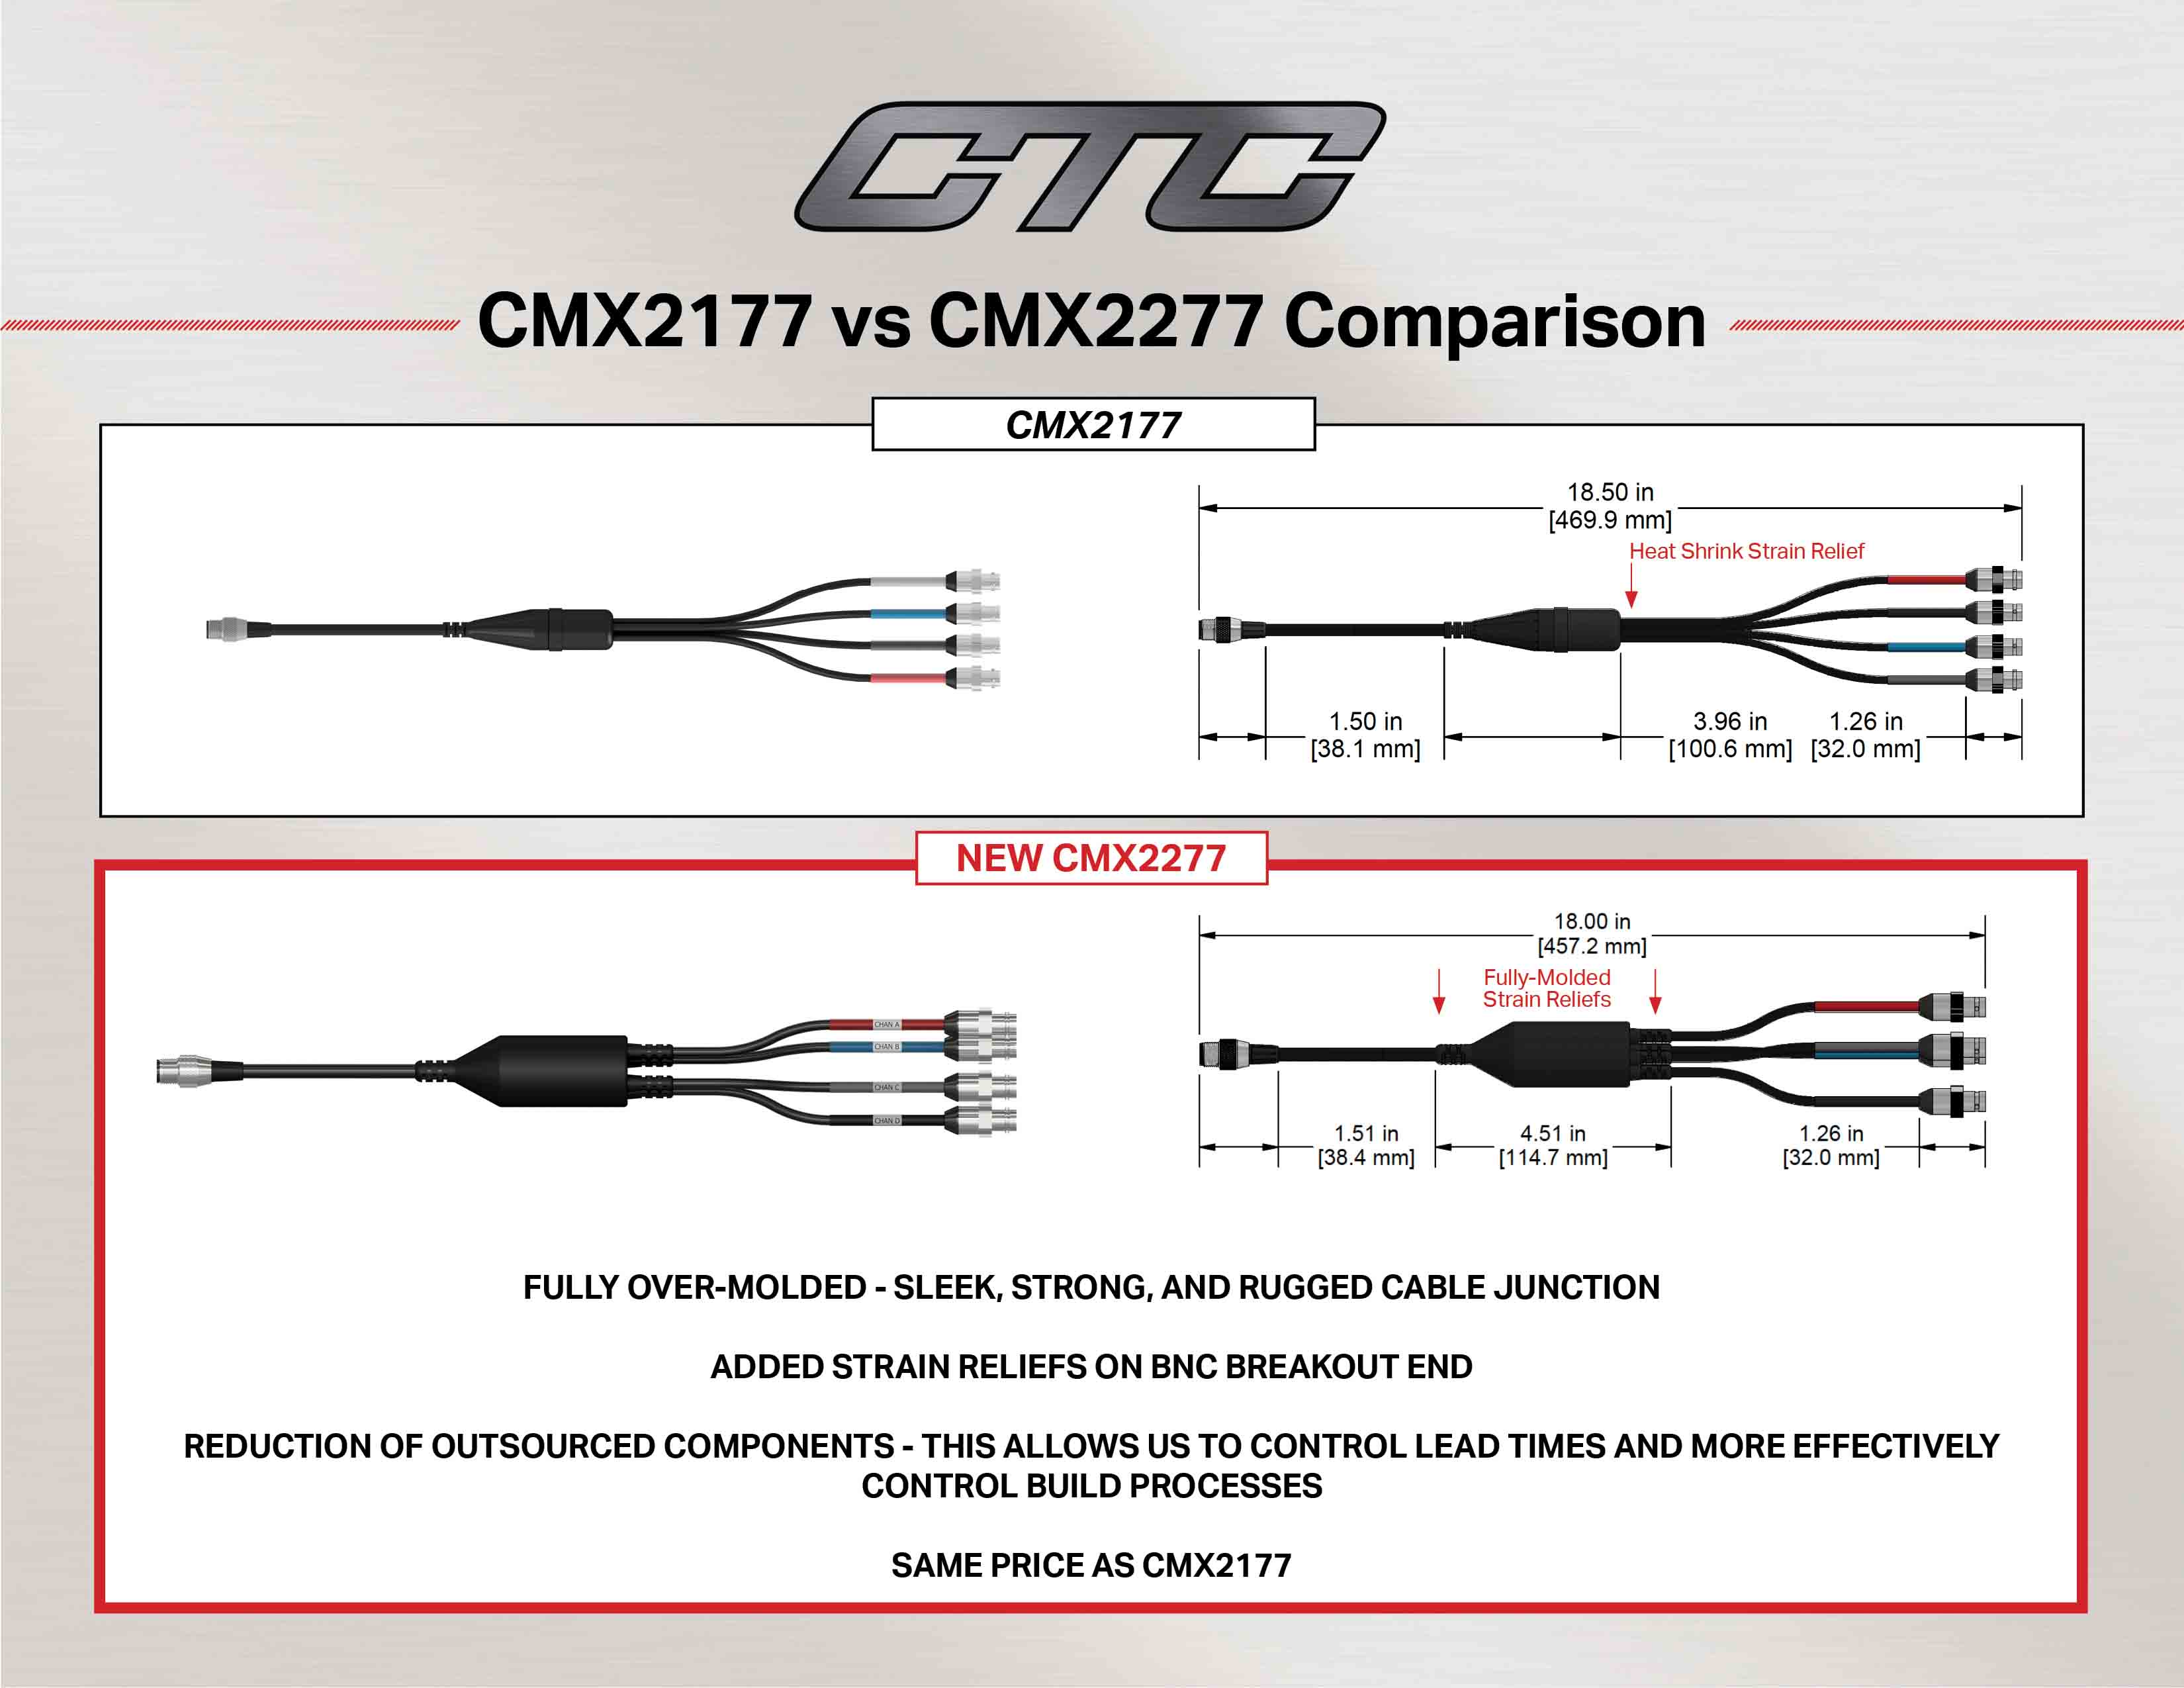 CMX2177 vs CMX2277 cable comparison diagram and measurements